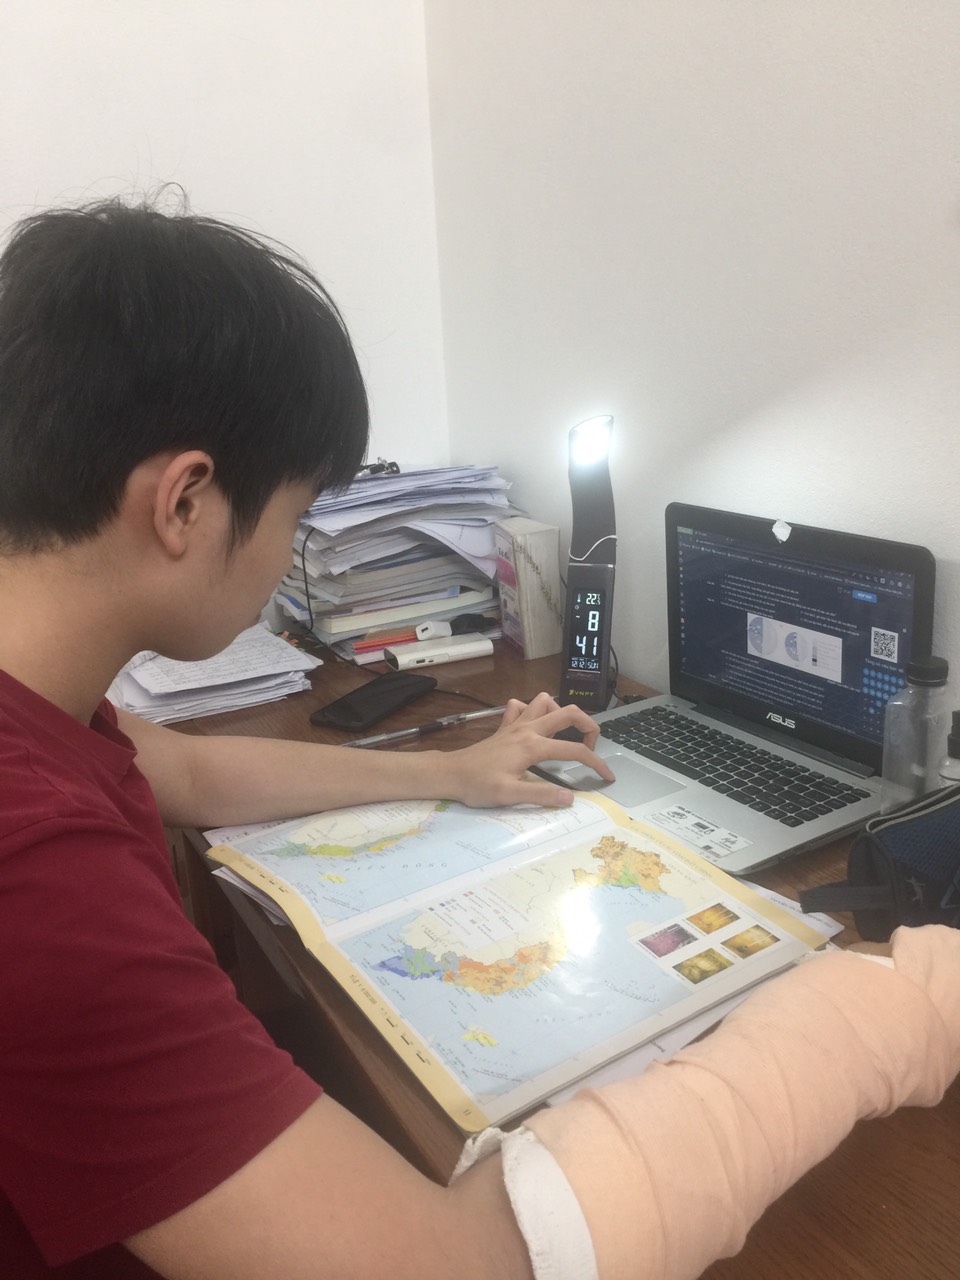 Hải Dương tổ chức thi thử tốt nghiệp THPT Quốc gia trực tuyến trên hệ thống Onluyen.vn